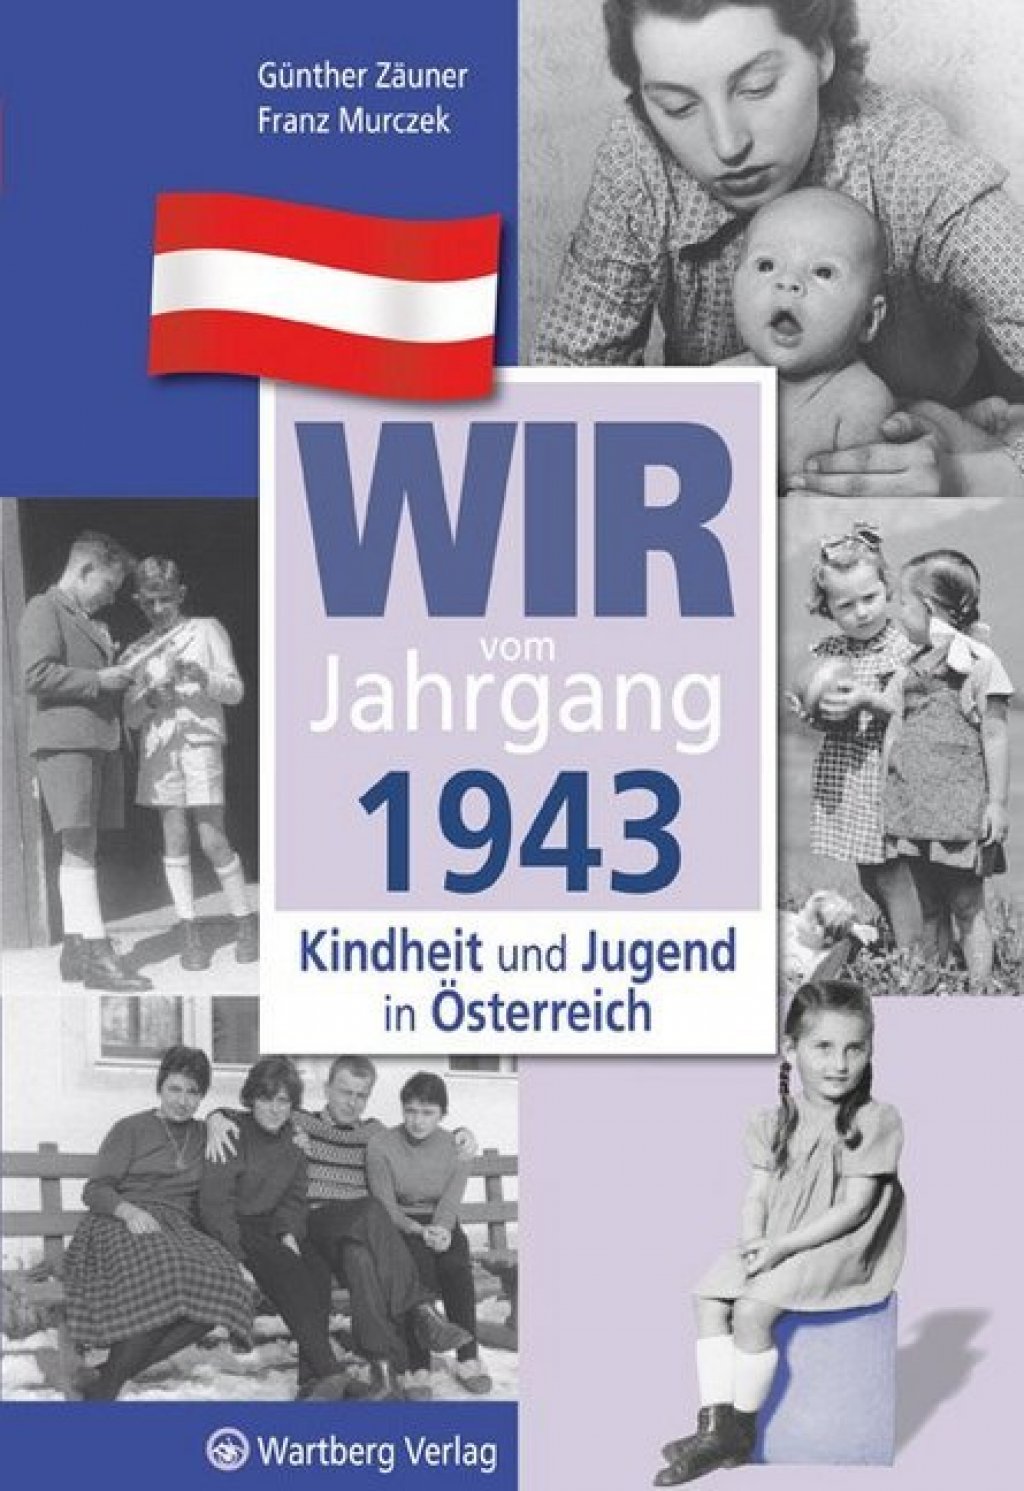 Wir vom Jahrgang 1943 - Kindheit und Jugend in Österreich